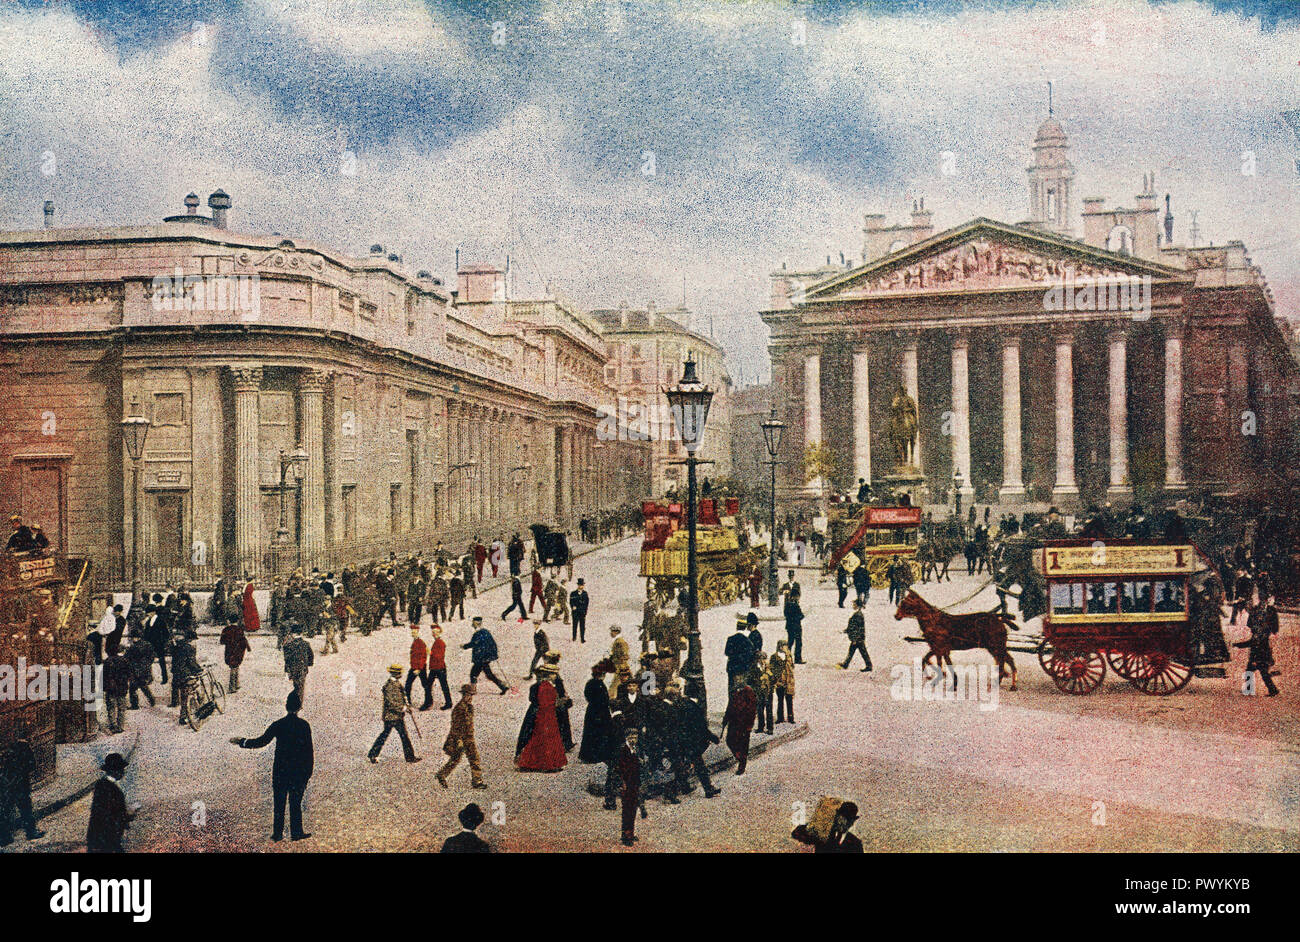 Die Bank von England und der Royal Exchange, London, England. Aus dem Business Lexikon und Rechtsberater, veröffentlicht 1920. Stockfoto